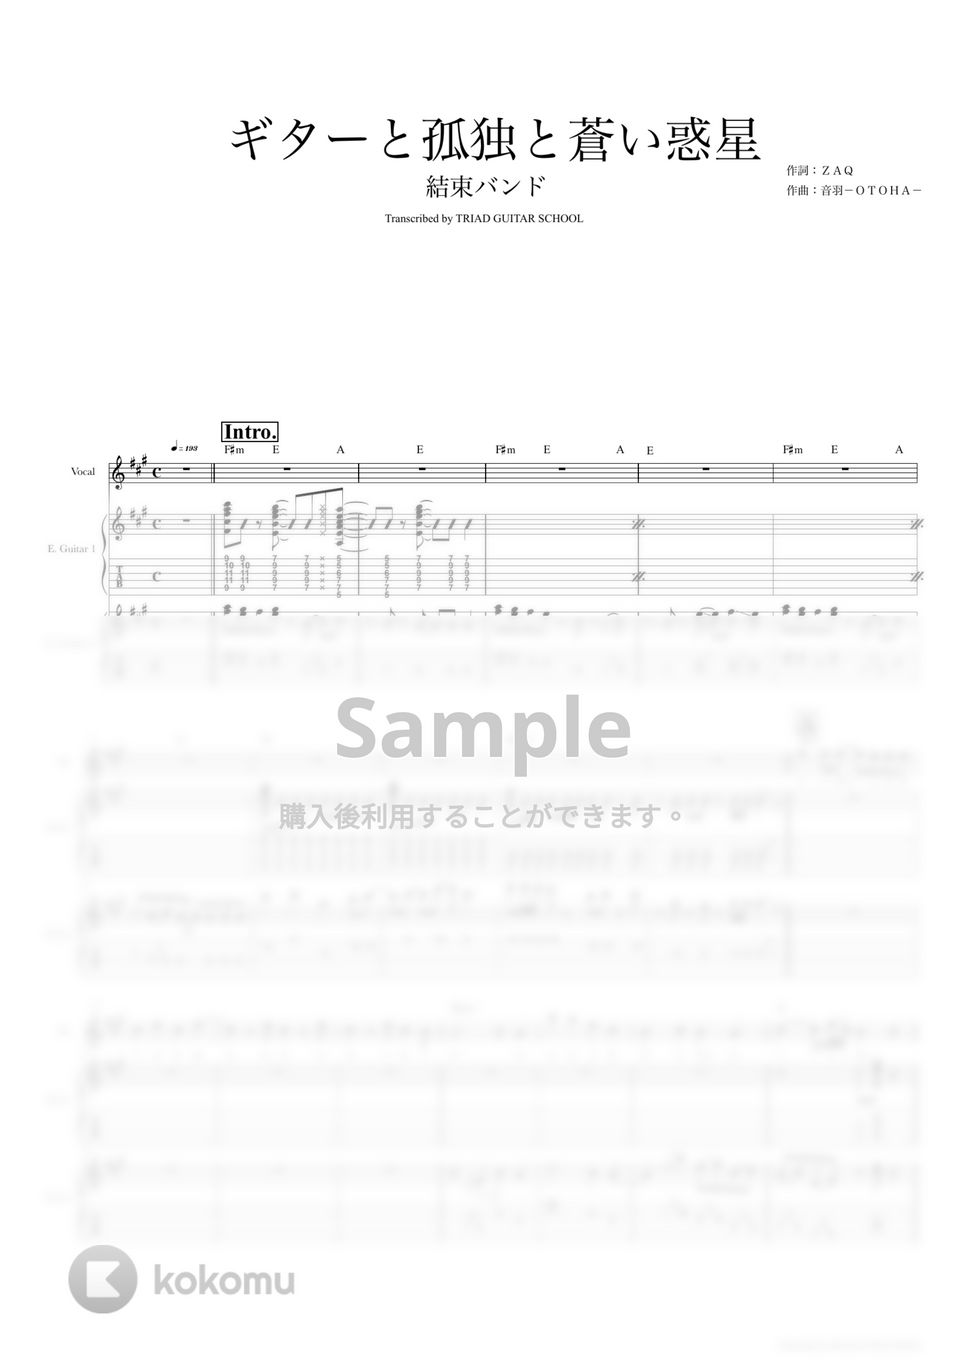 結束バンド - ギターと孤独と蒼い惑星 (ギタースコア・歌詞・コード付き) by TRIAD GUITAR SCHOOL